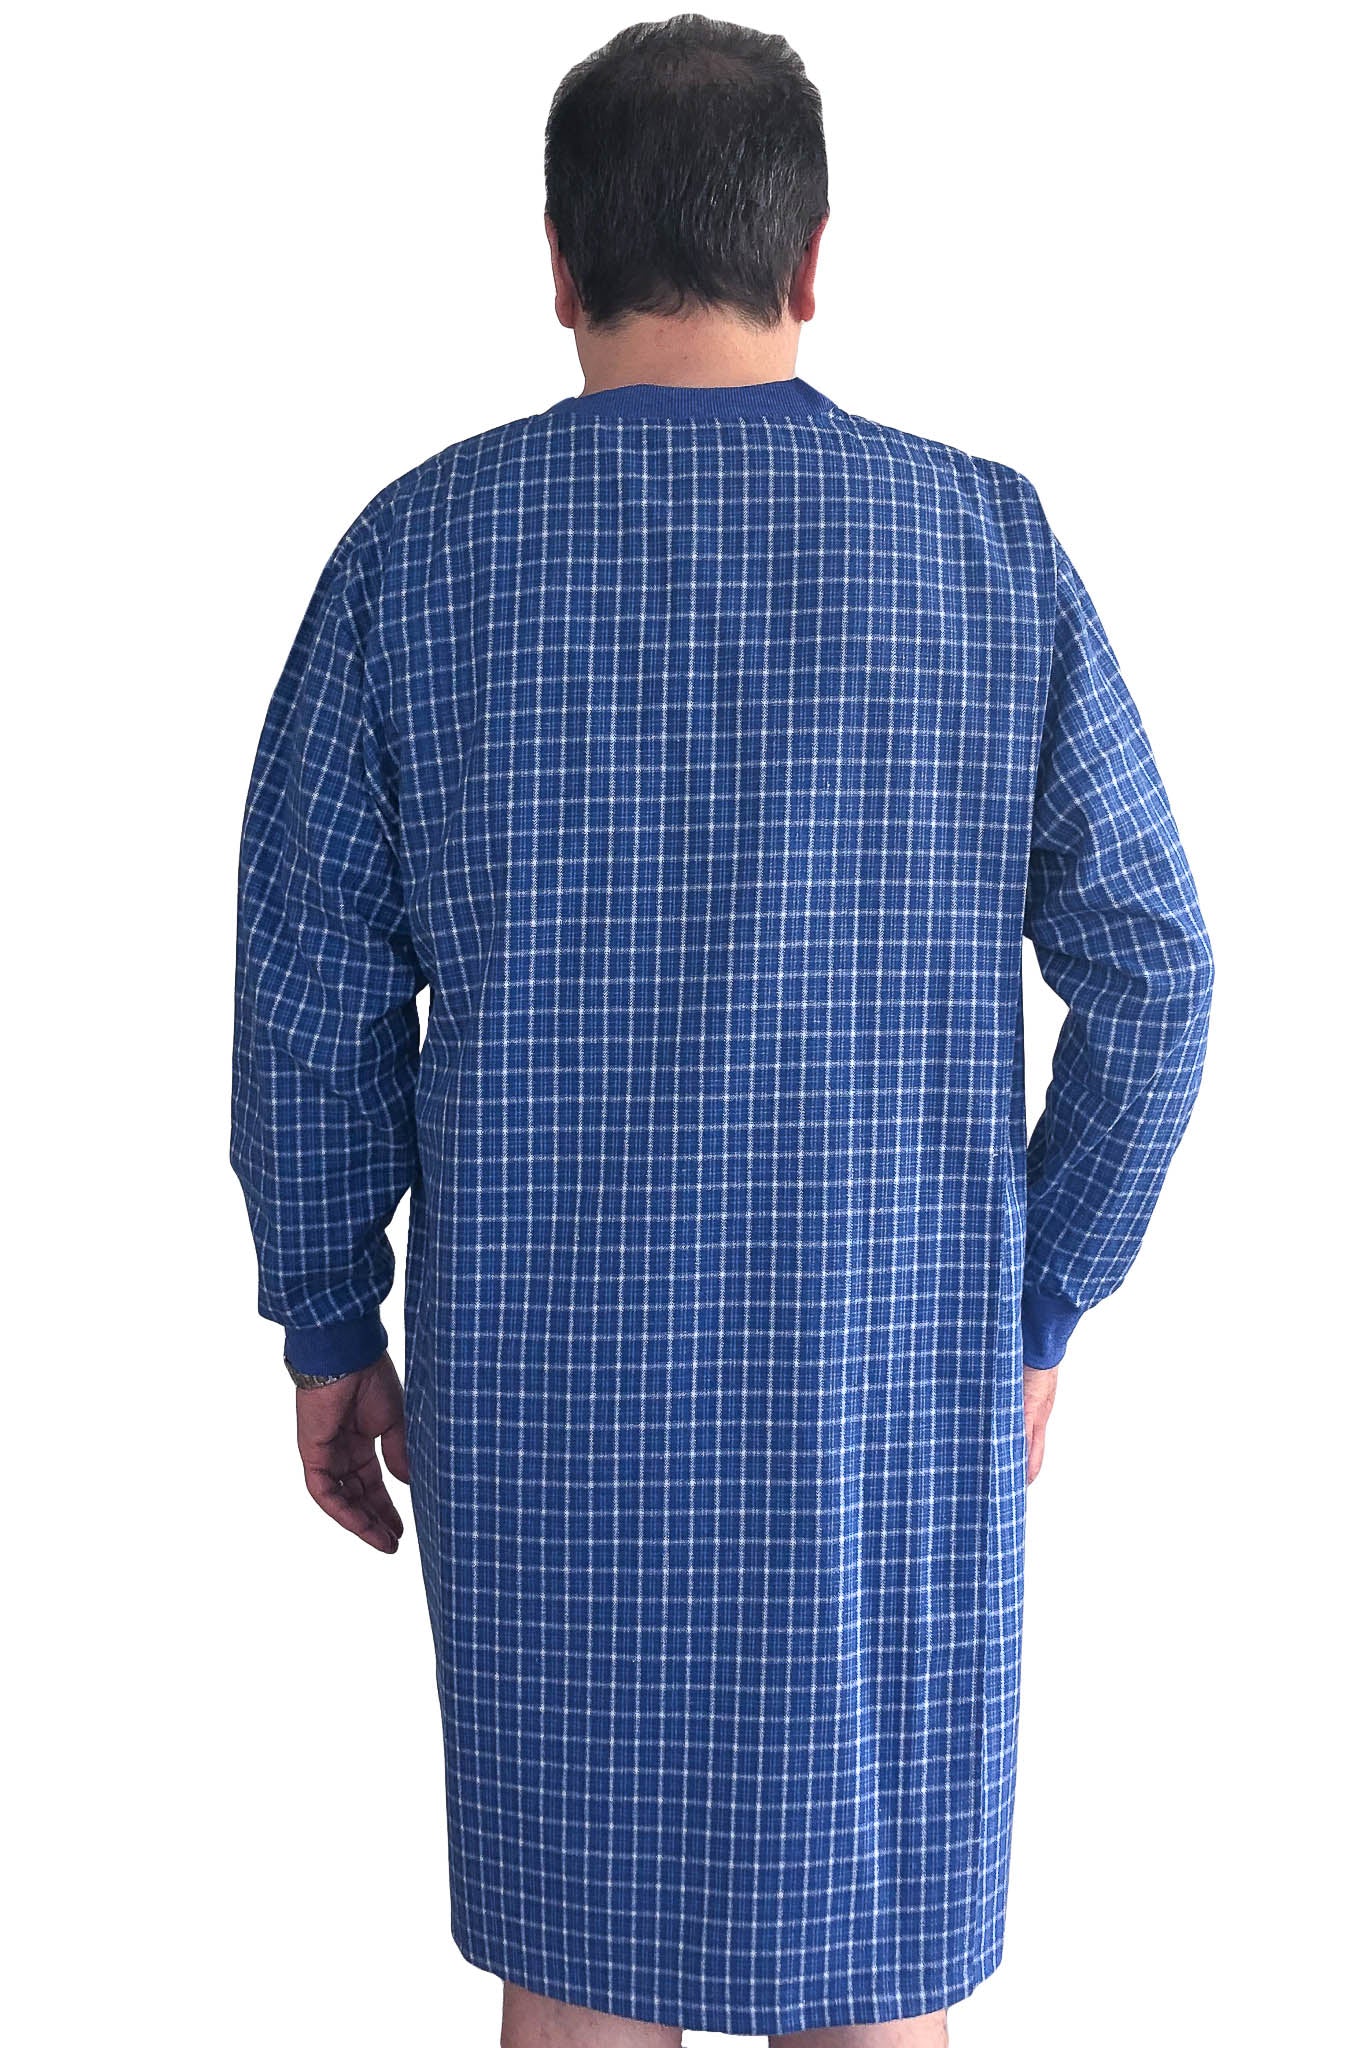 Nightshirt for Men - Blue | Milo | Adaptive Clothing by Ovidis